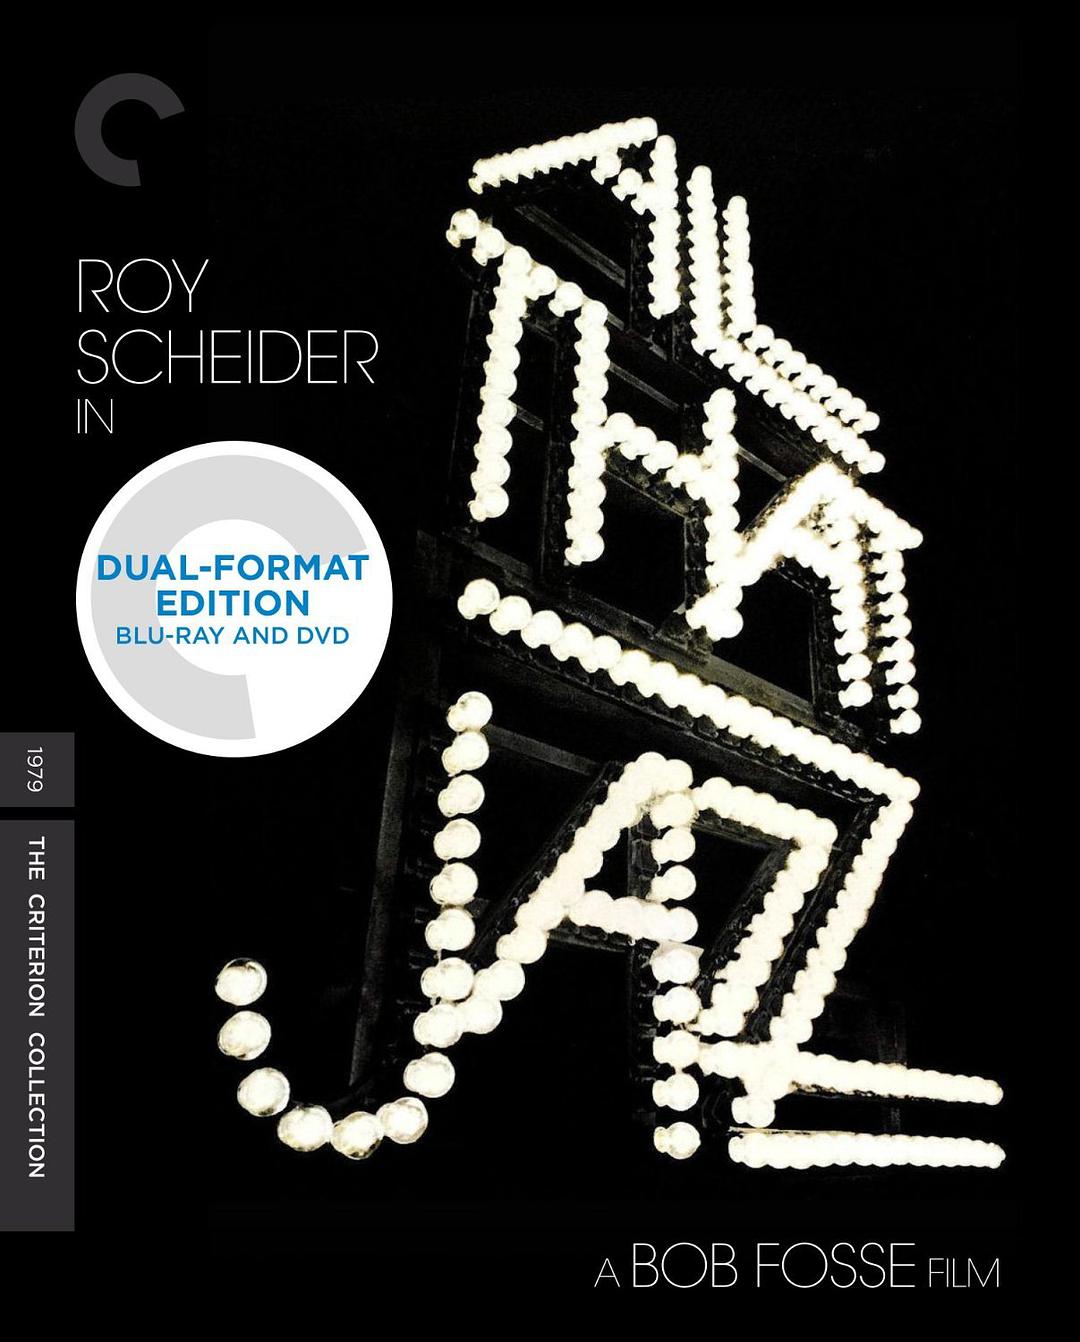 [浮生若梦]CC版原盘/DIY简繁中字/中英文对照字幕 All That Jazz 1979 Criterion Collection Blu-ray 1080p AVC DTS-HD MA 3.0 - 白自在[45.16GB]-1.jpg